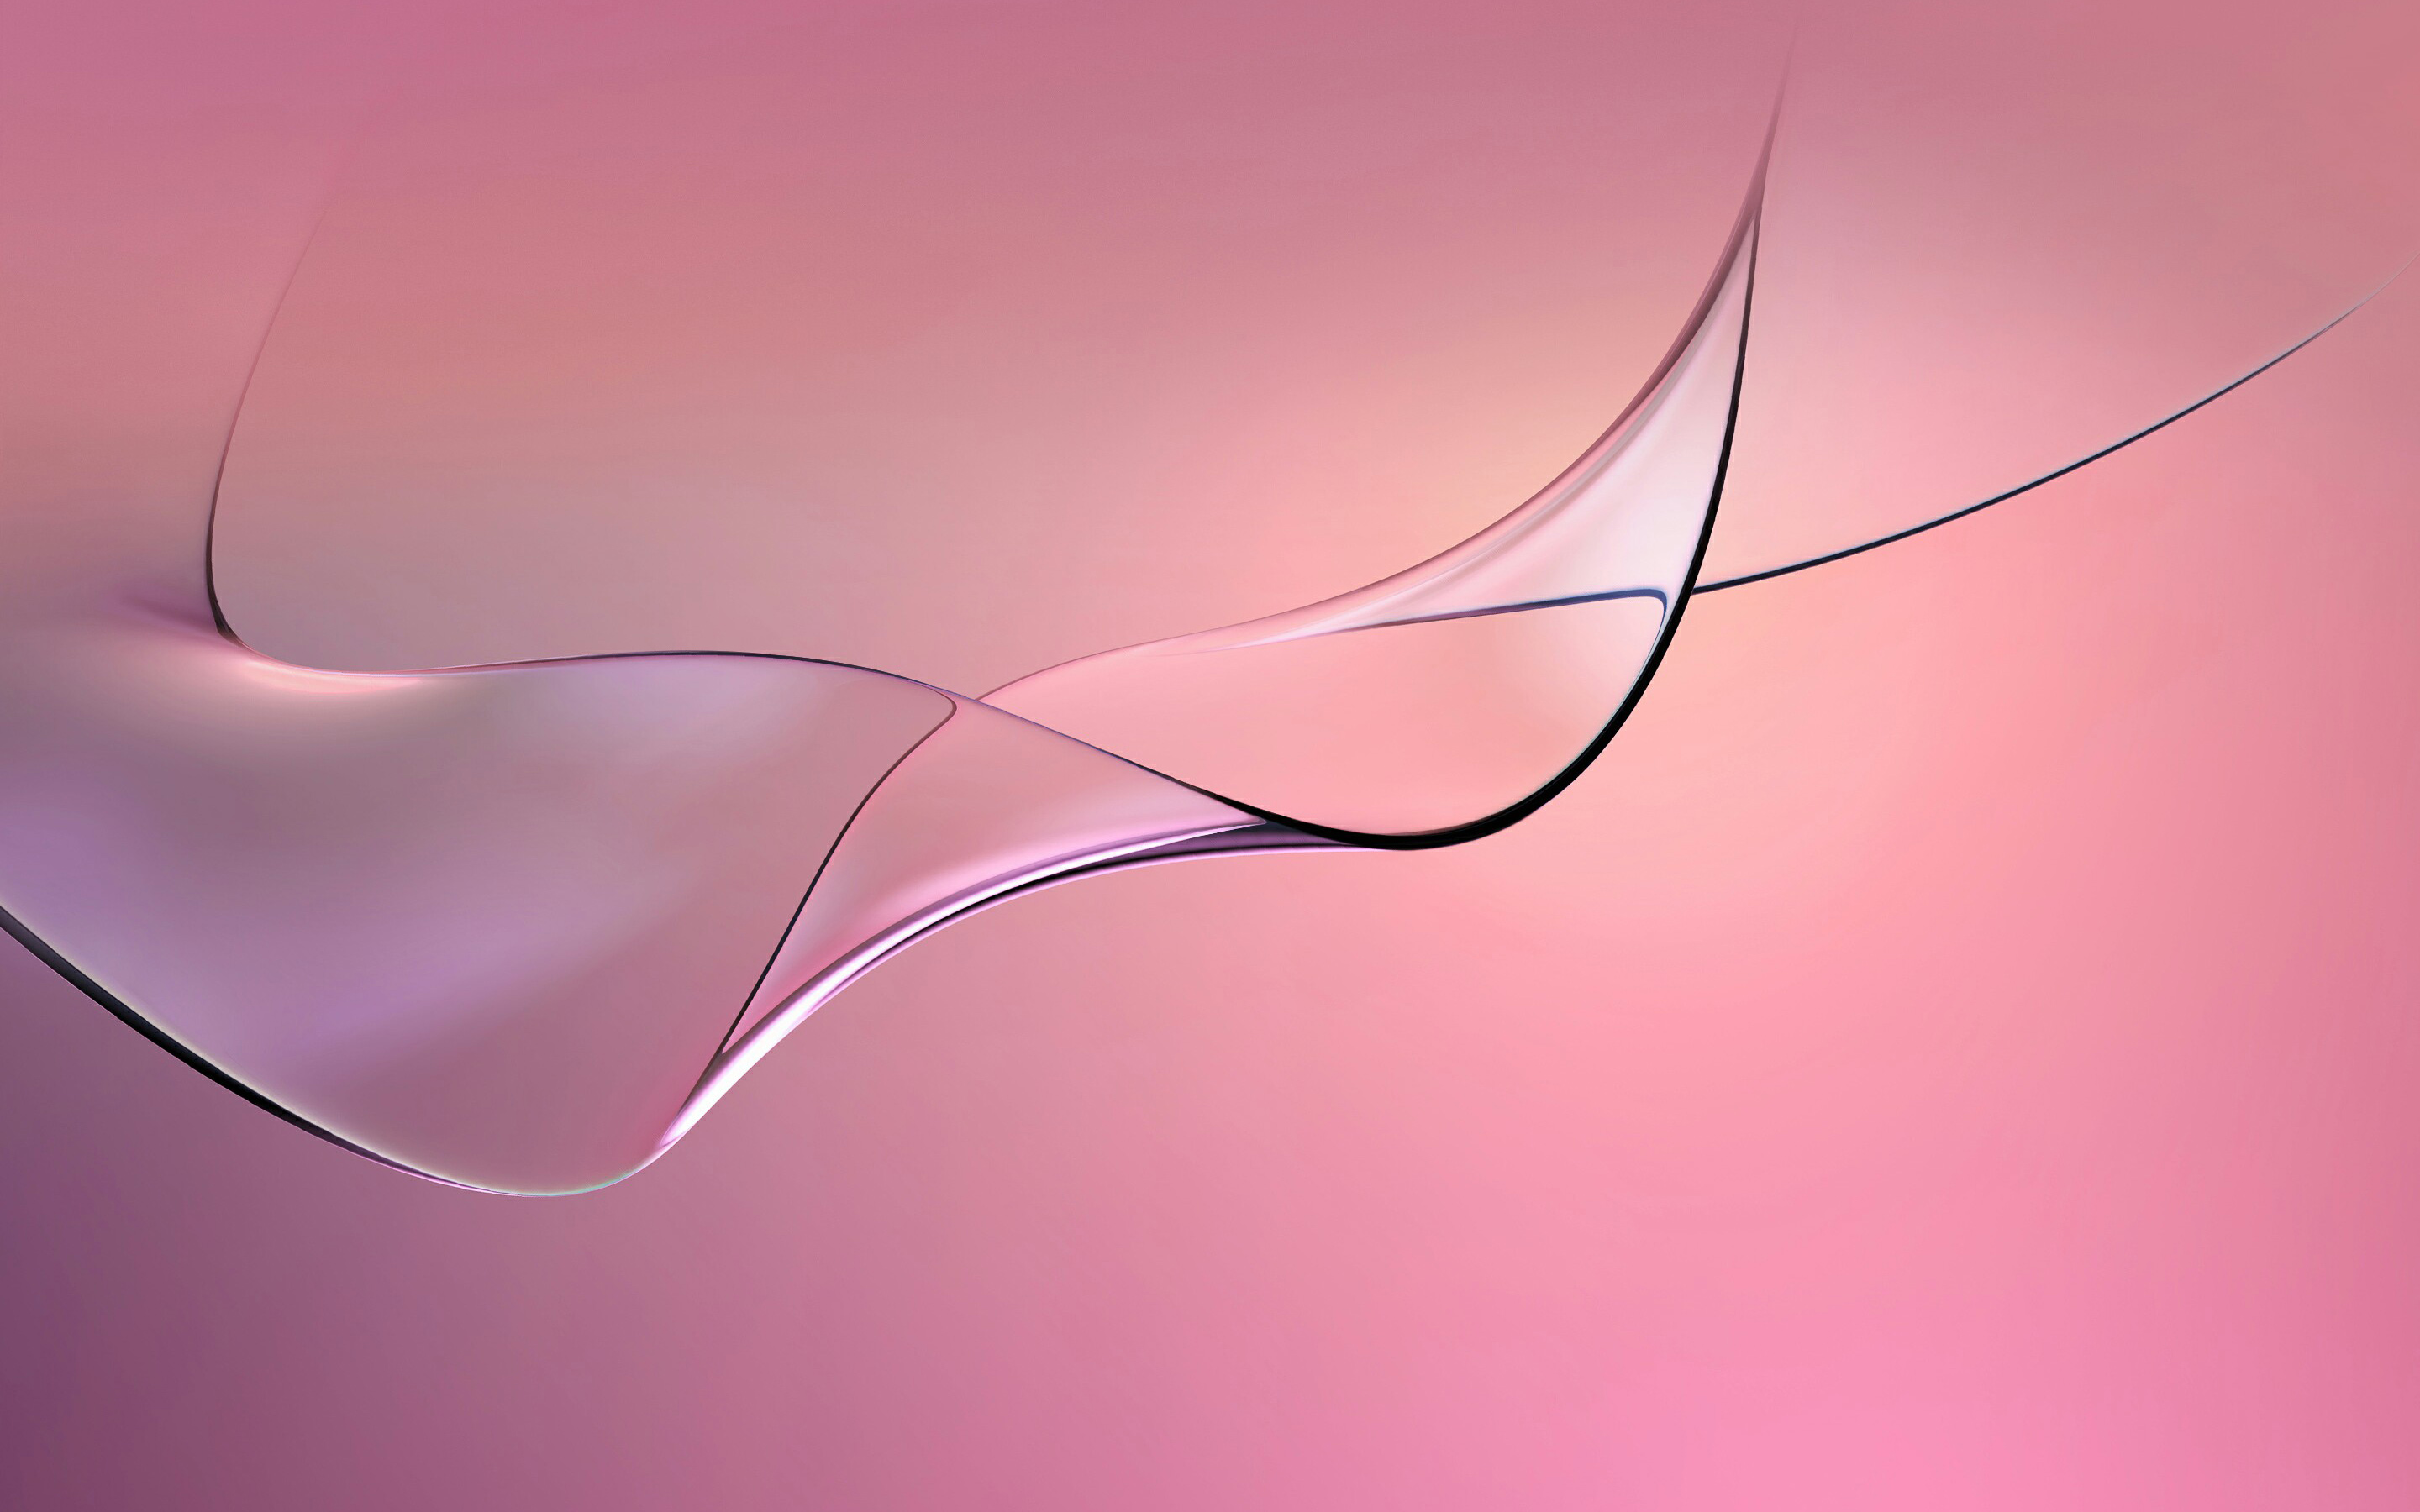 Pink Curves Abstract74505175 - Pink Curves Abstract - Splash, Pink, Curves, abstract